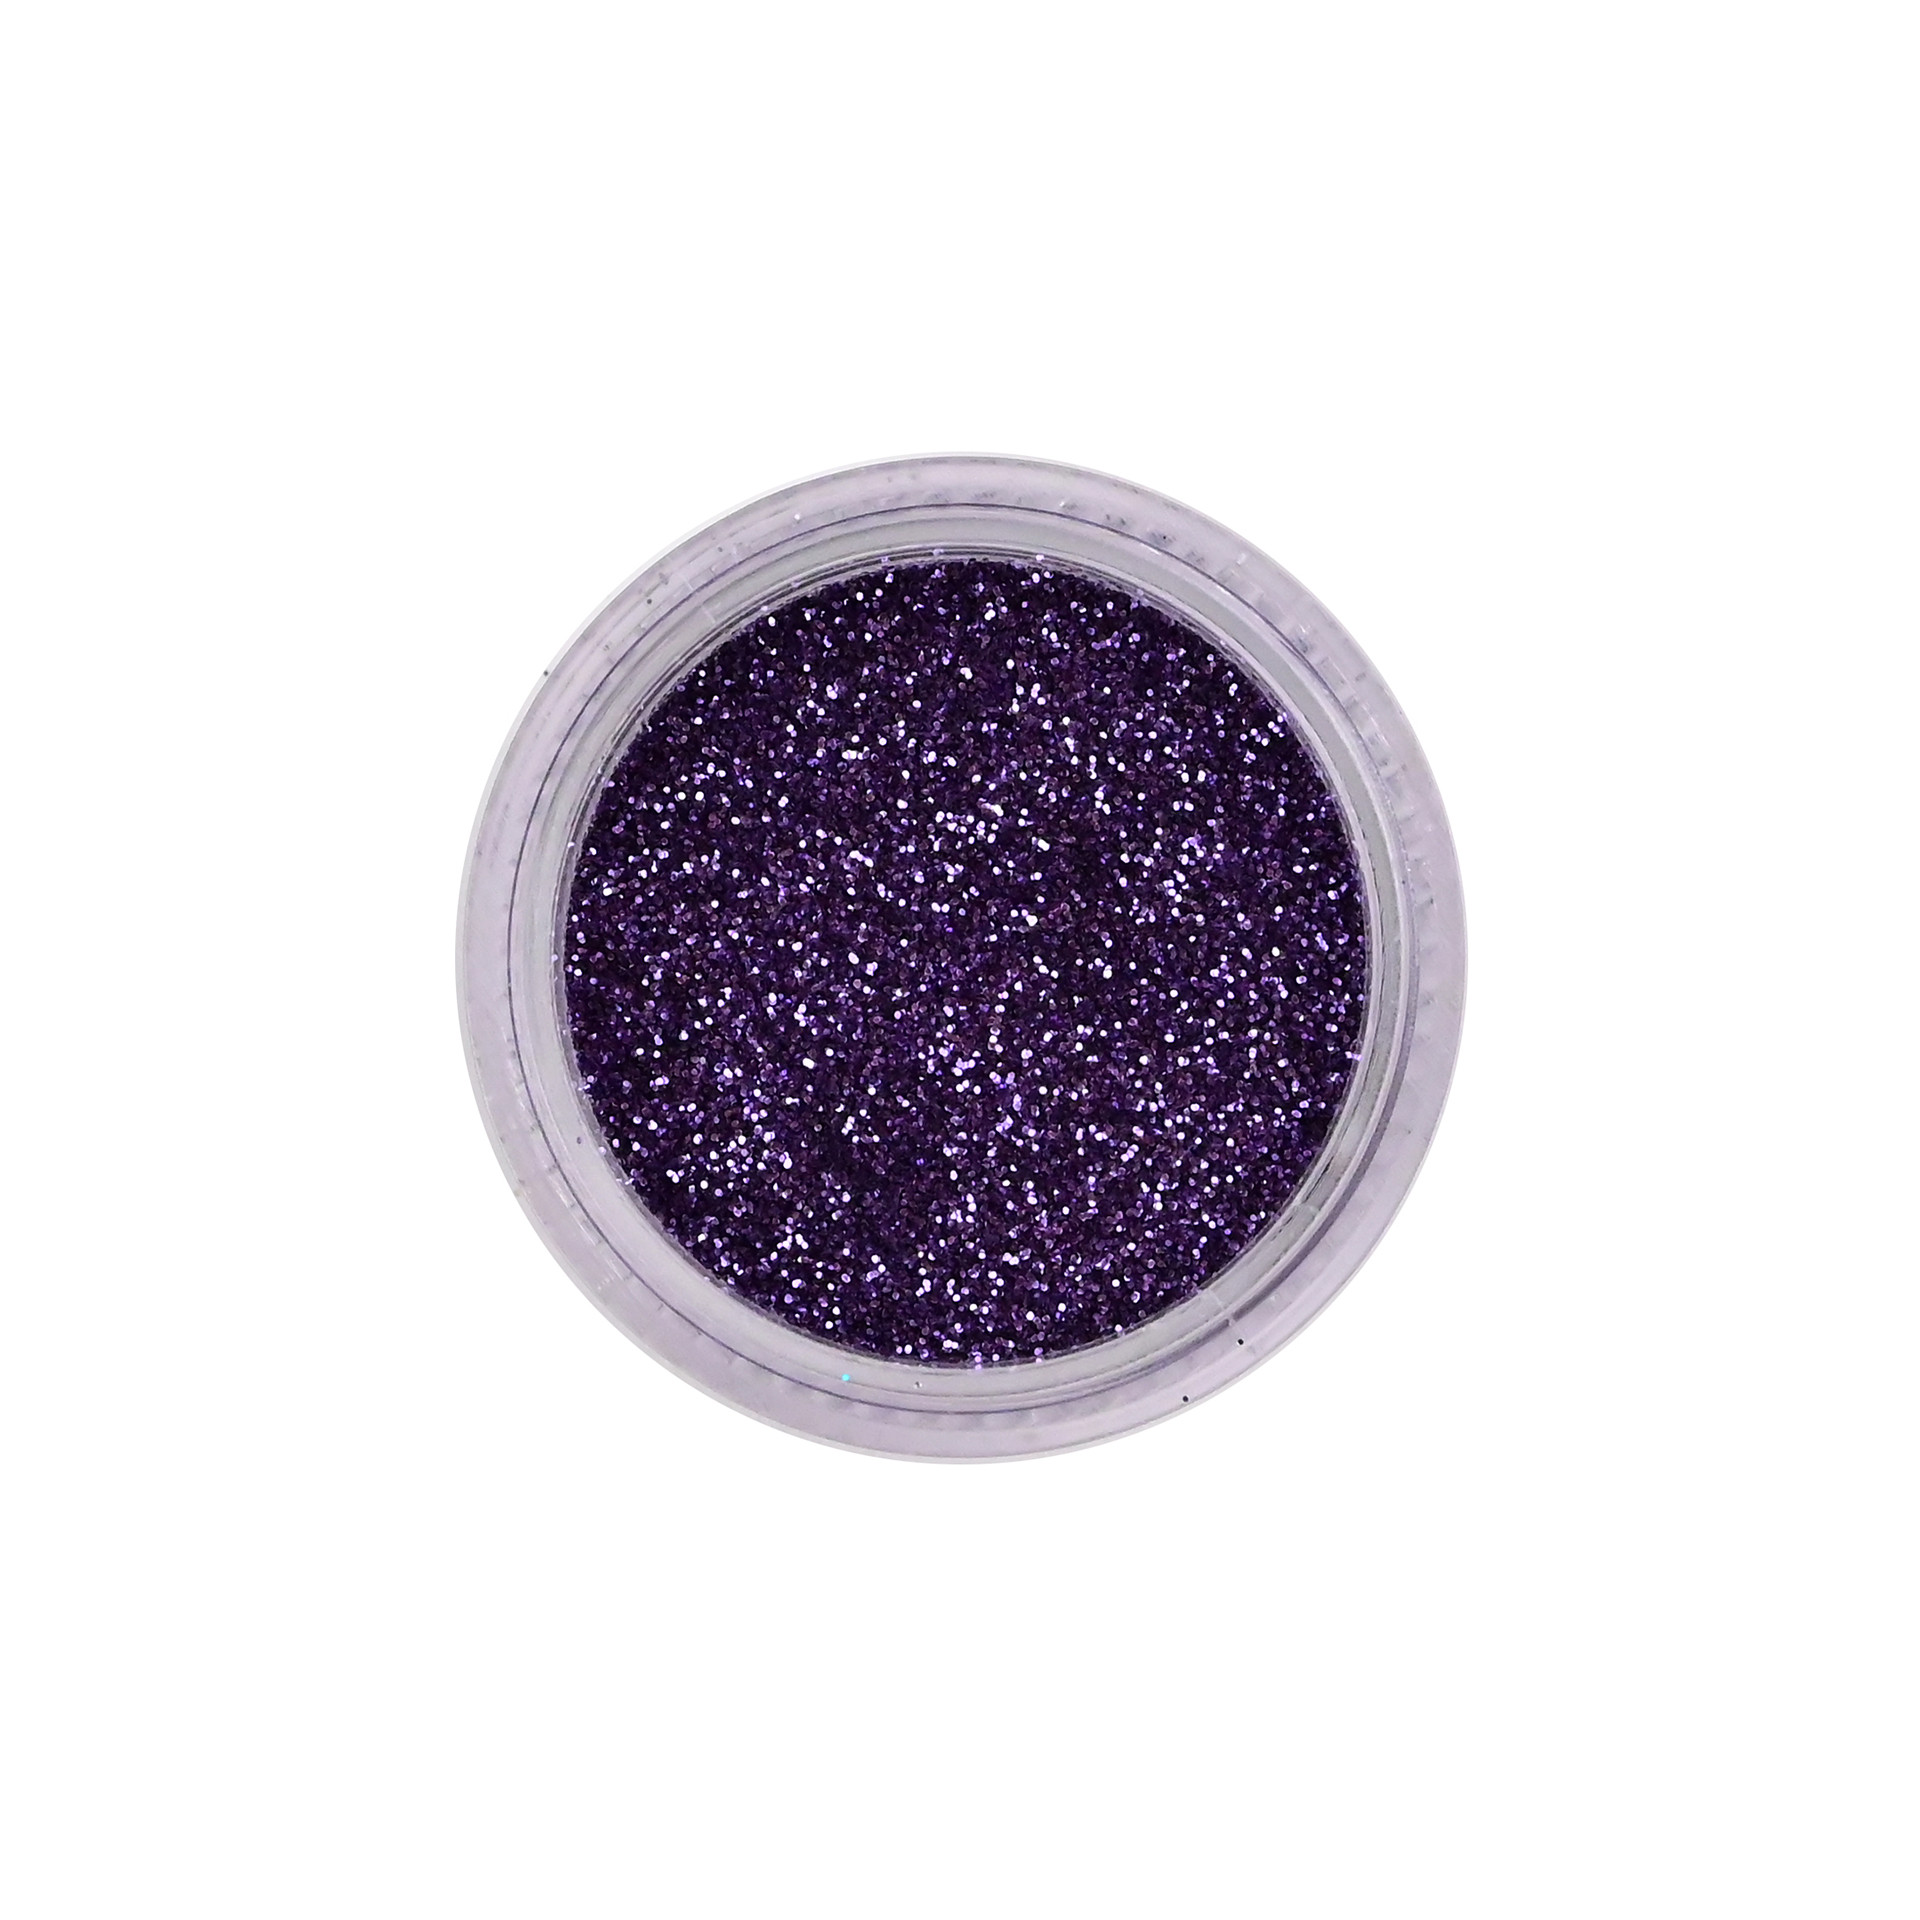 Petites paillettes violettes Pure Glitter packaging sans logo